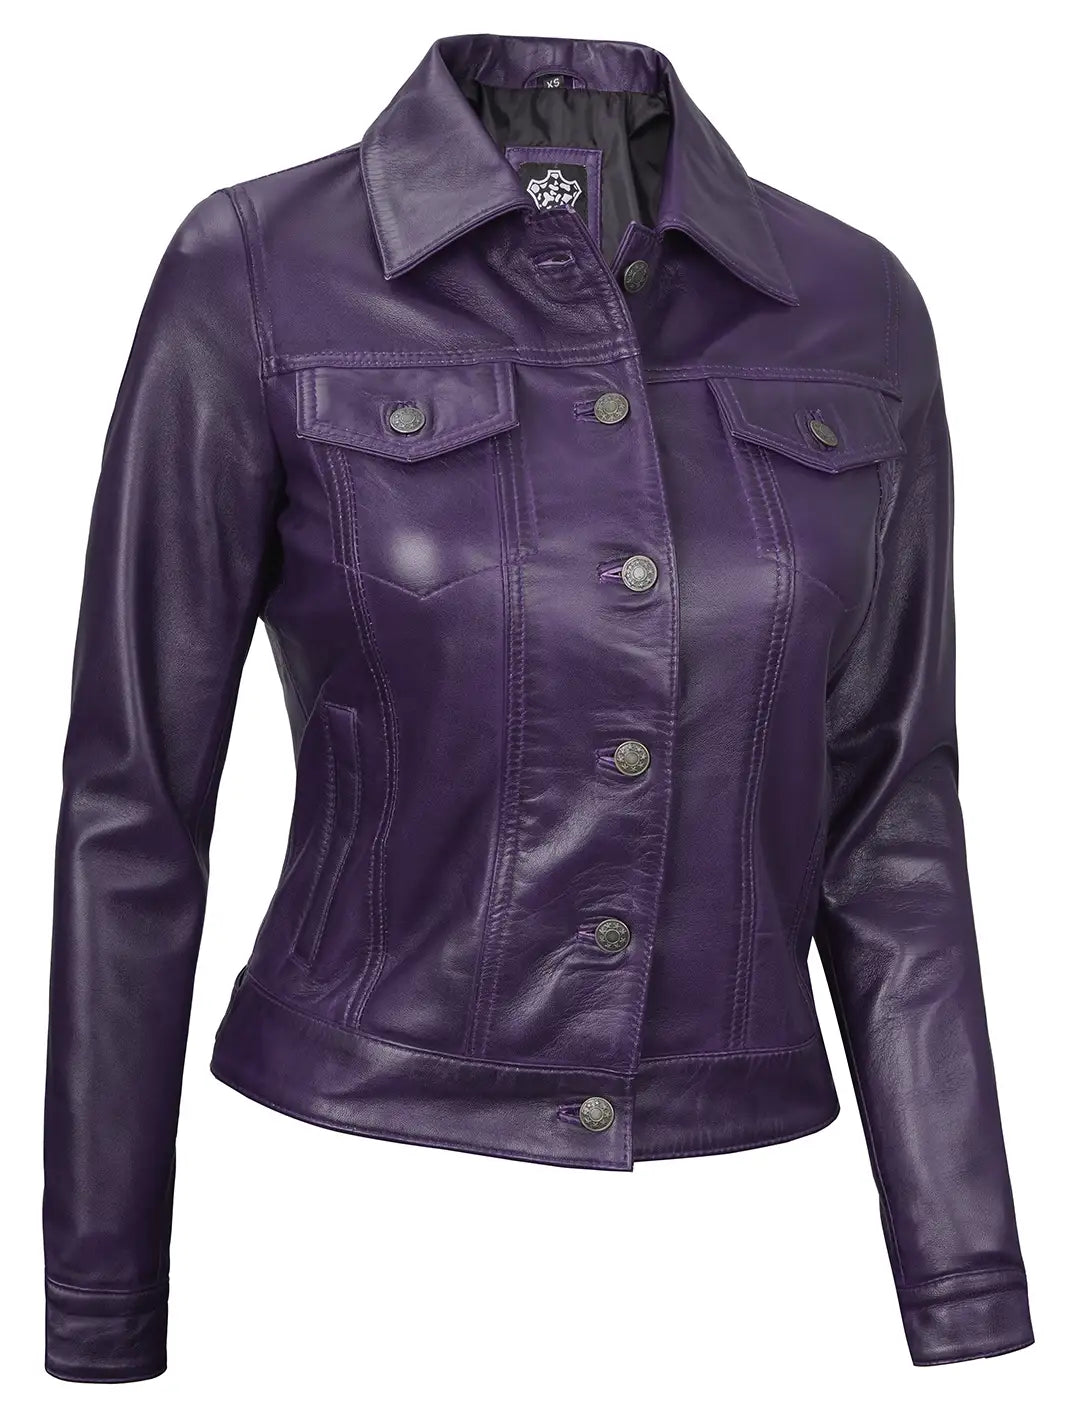 Trucker leather jacket for women